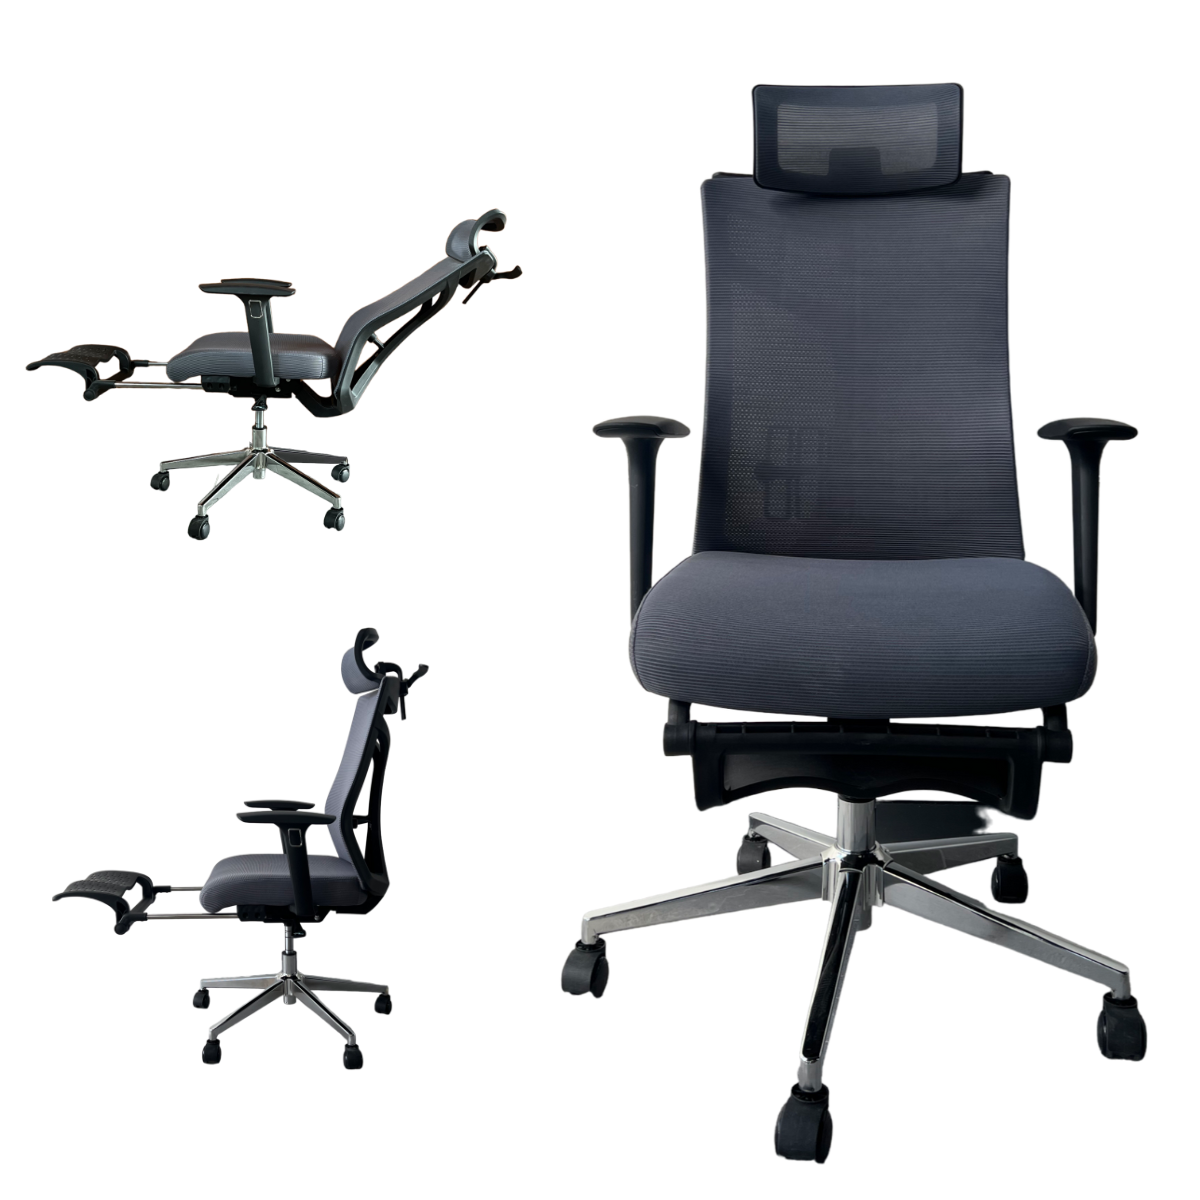 Sillas Ergonómicas en MANIZALES, Sillas para Oficina Manizales, sillas de  oficina, sillas de escritorio, sillas oficina, sillas para escritorio, silla  escritorio, sillas ergonomicas para oficina, sillas ejecutivas